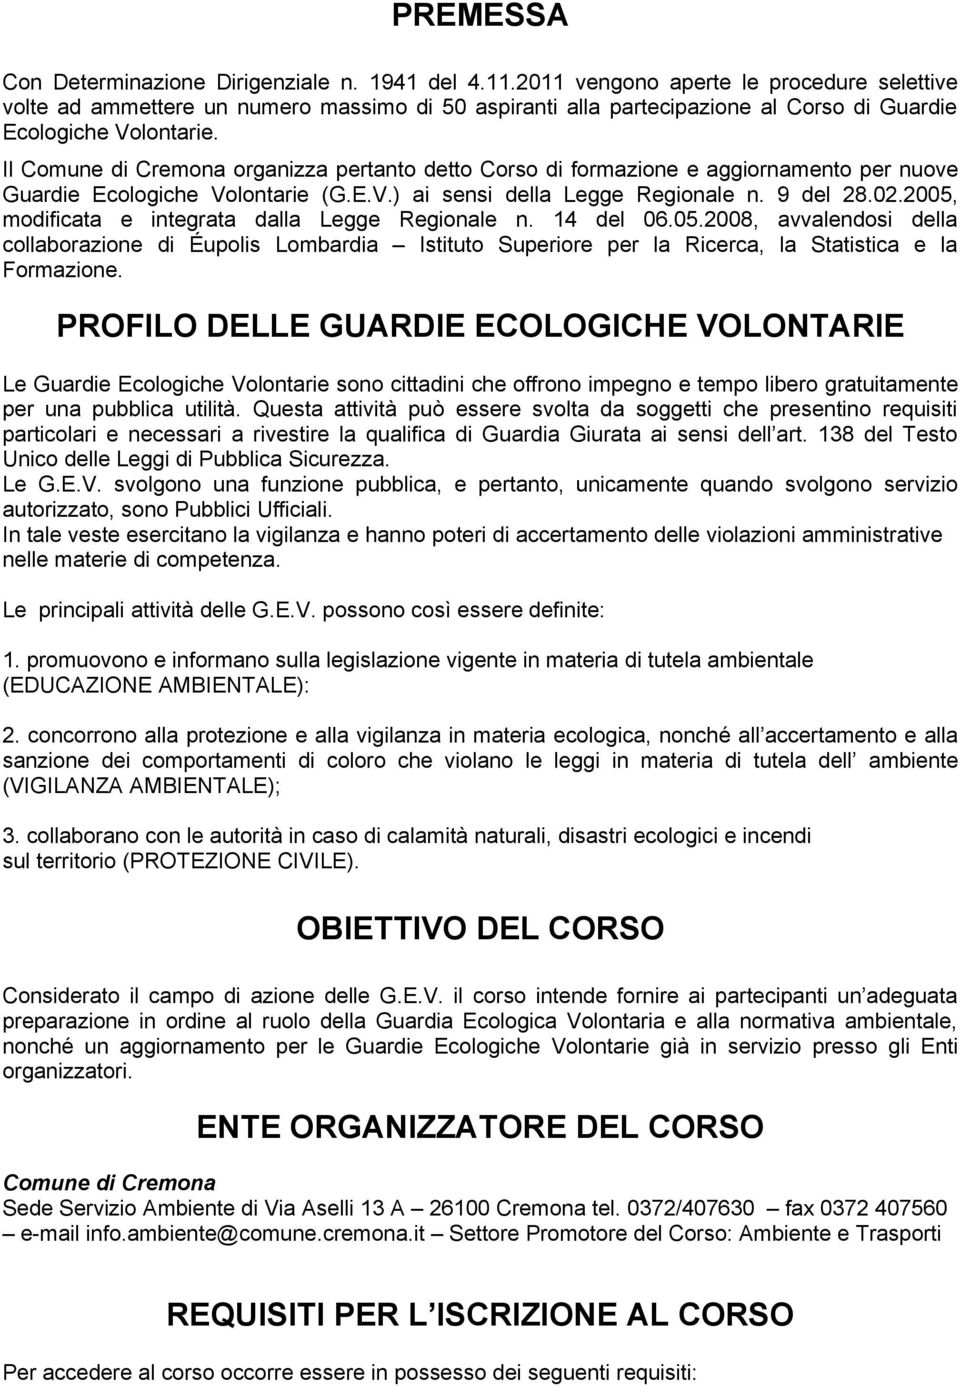 Il Comune di Cremona organizza pertanto detto Corso di formazione e aggiornamento per nuove Guardie Ecologiche Volontarie (G.E.V.) ai sensi della Legge Regionale n. 9 del 28.02.